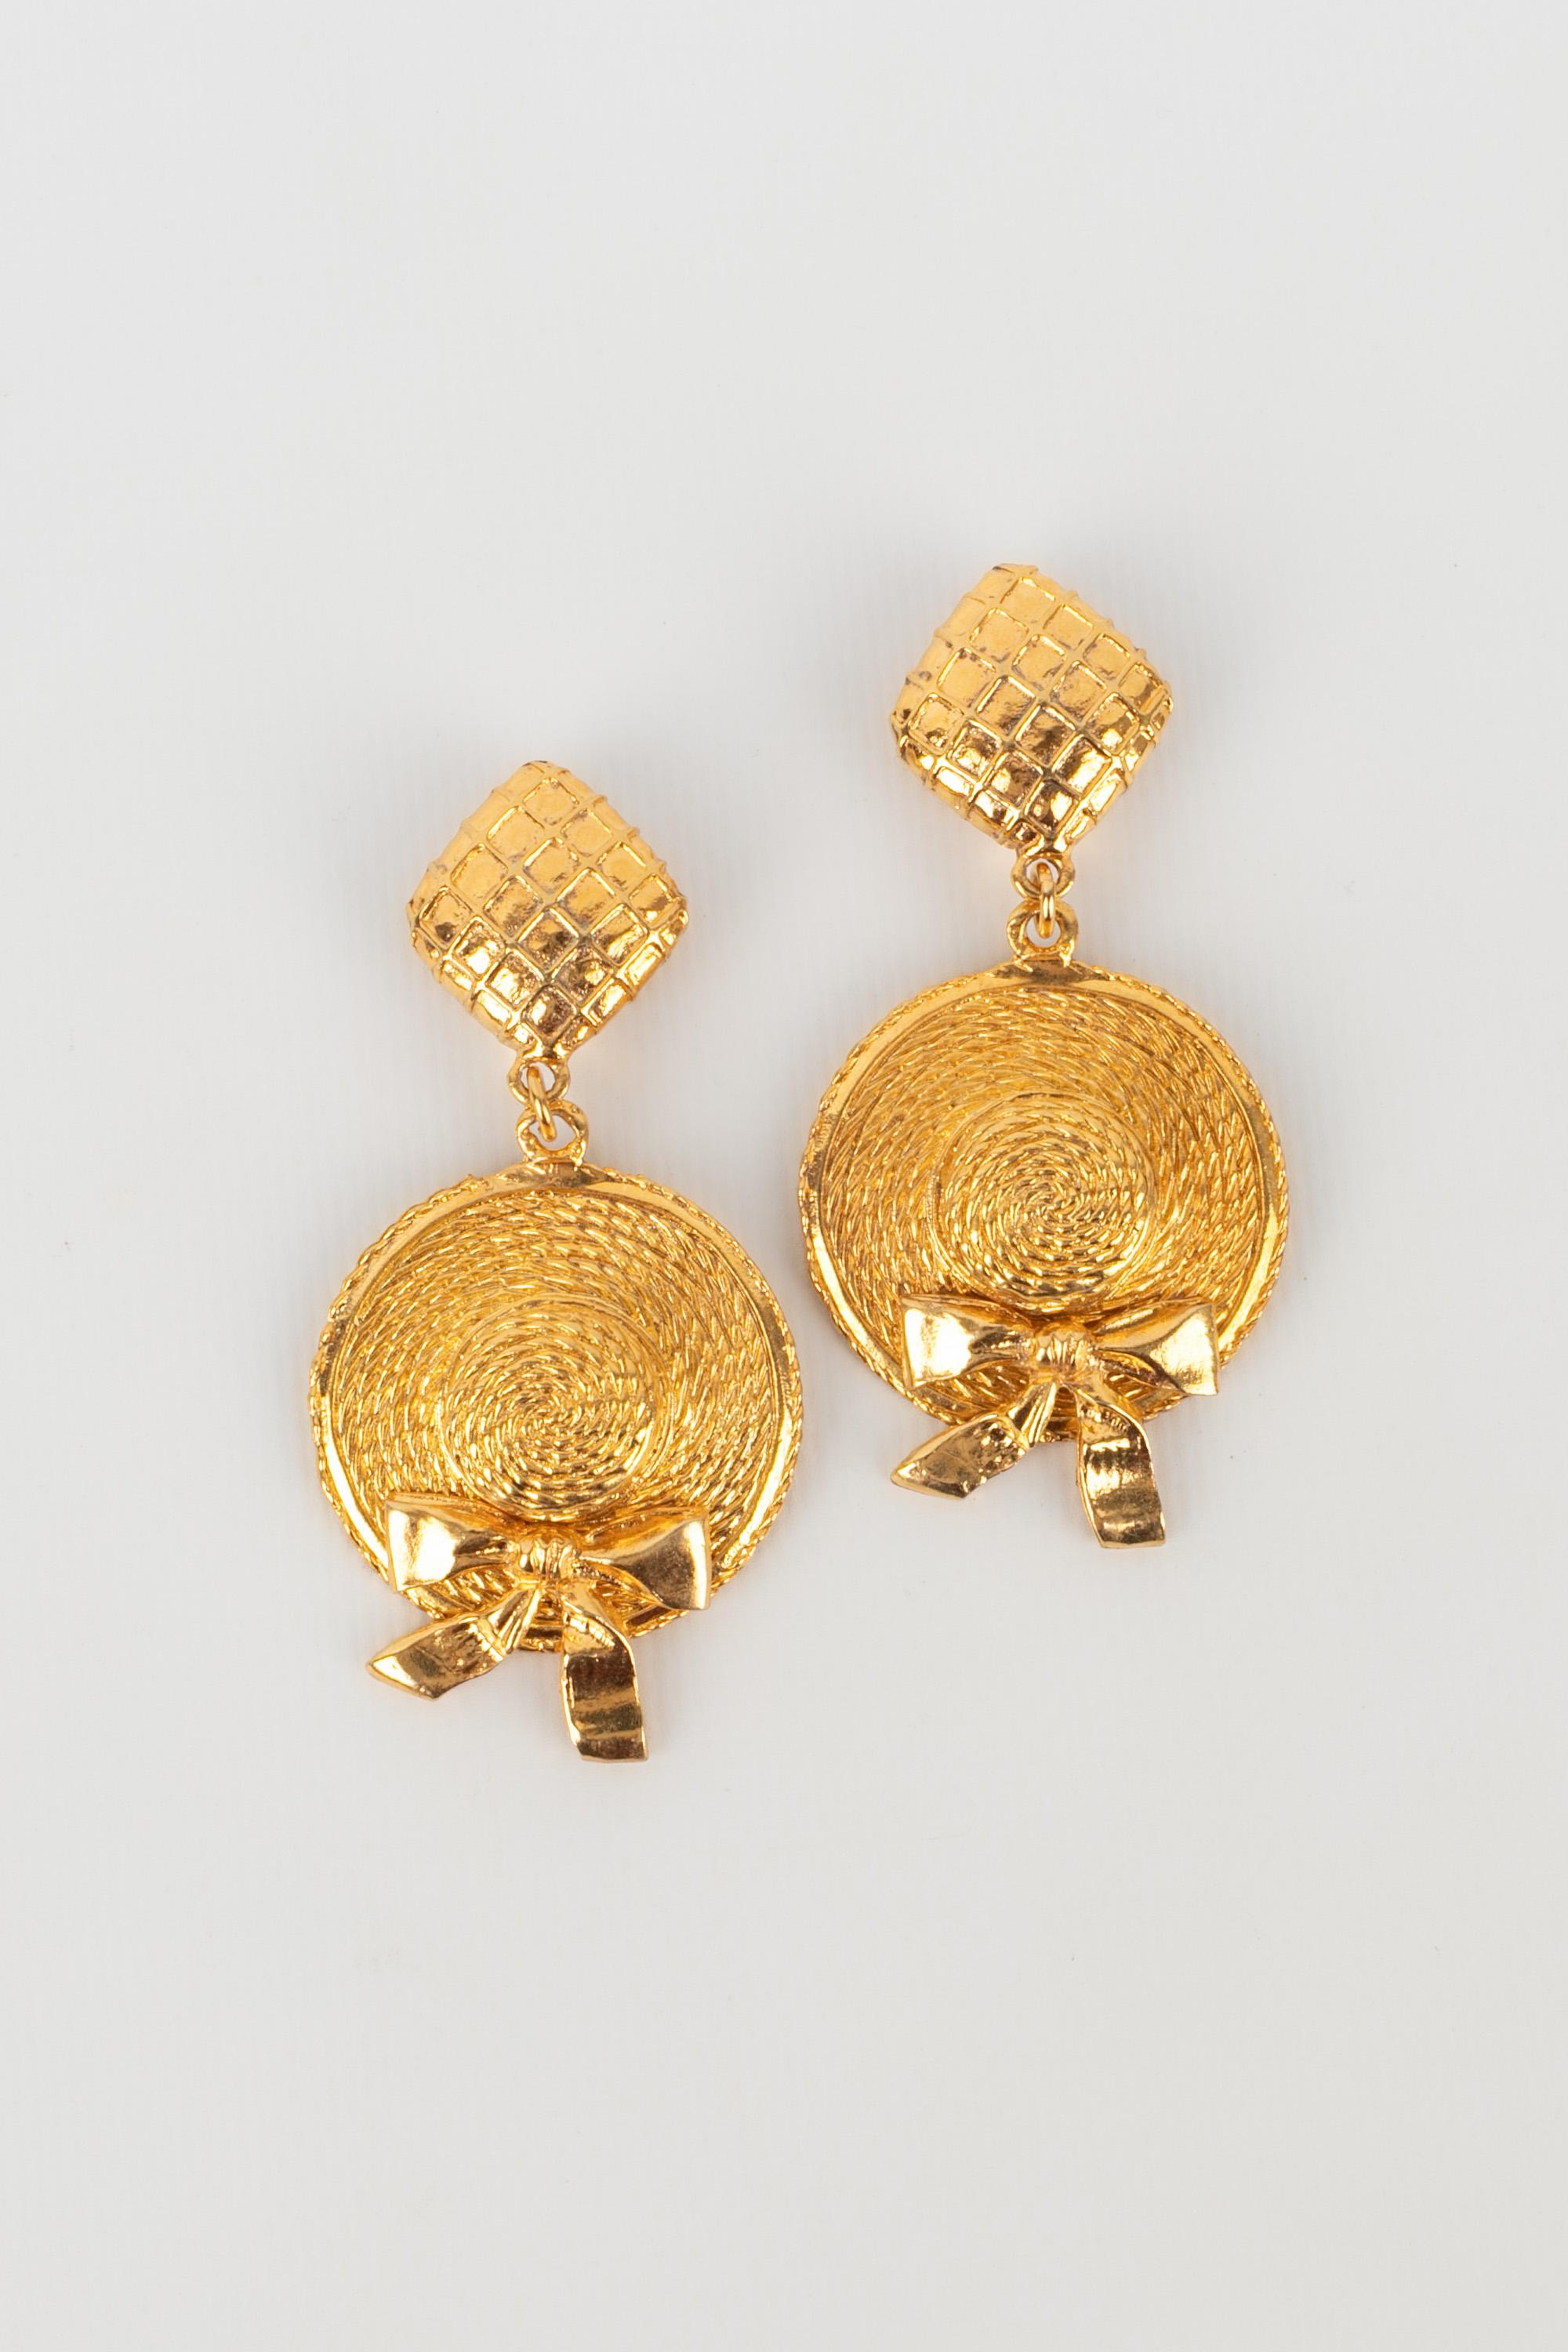 CHANEL - (Made in France) Goldene Ohrringe aus Metall, die Hüte darstellen. Schmuck aus den 1990er Jahren.

Bedingung:
Sehr guter Zustand

Abmessungen:
Höhe: 7.5 cm

BOB95